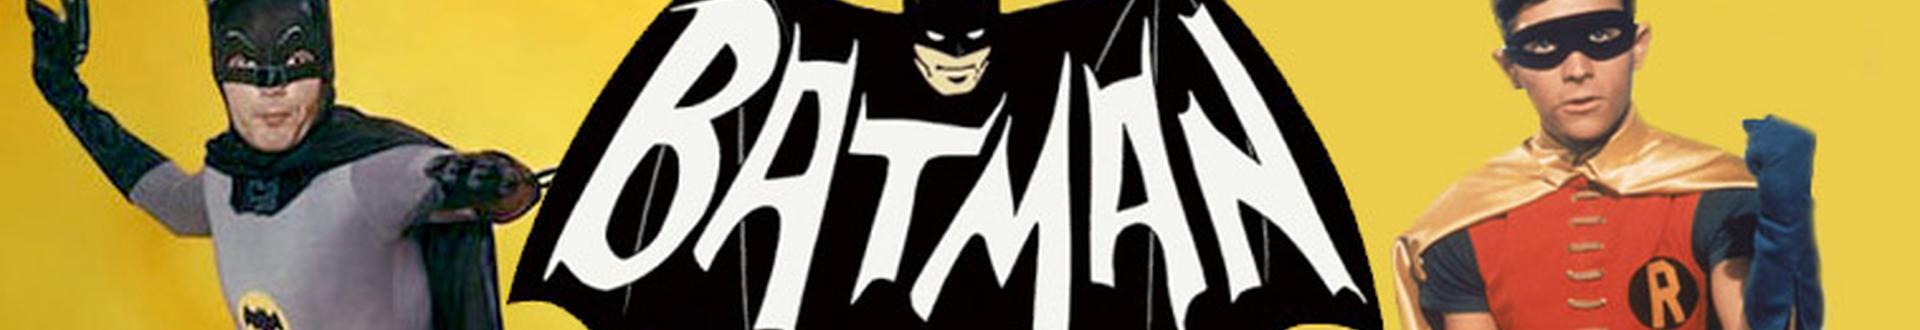 Image illustrative de Batman